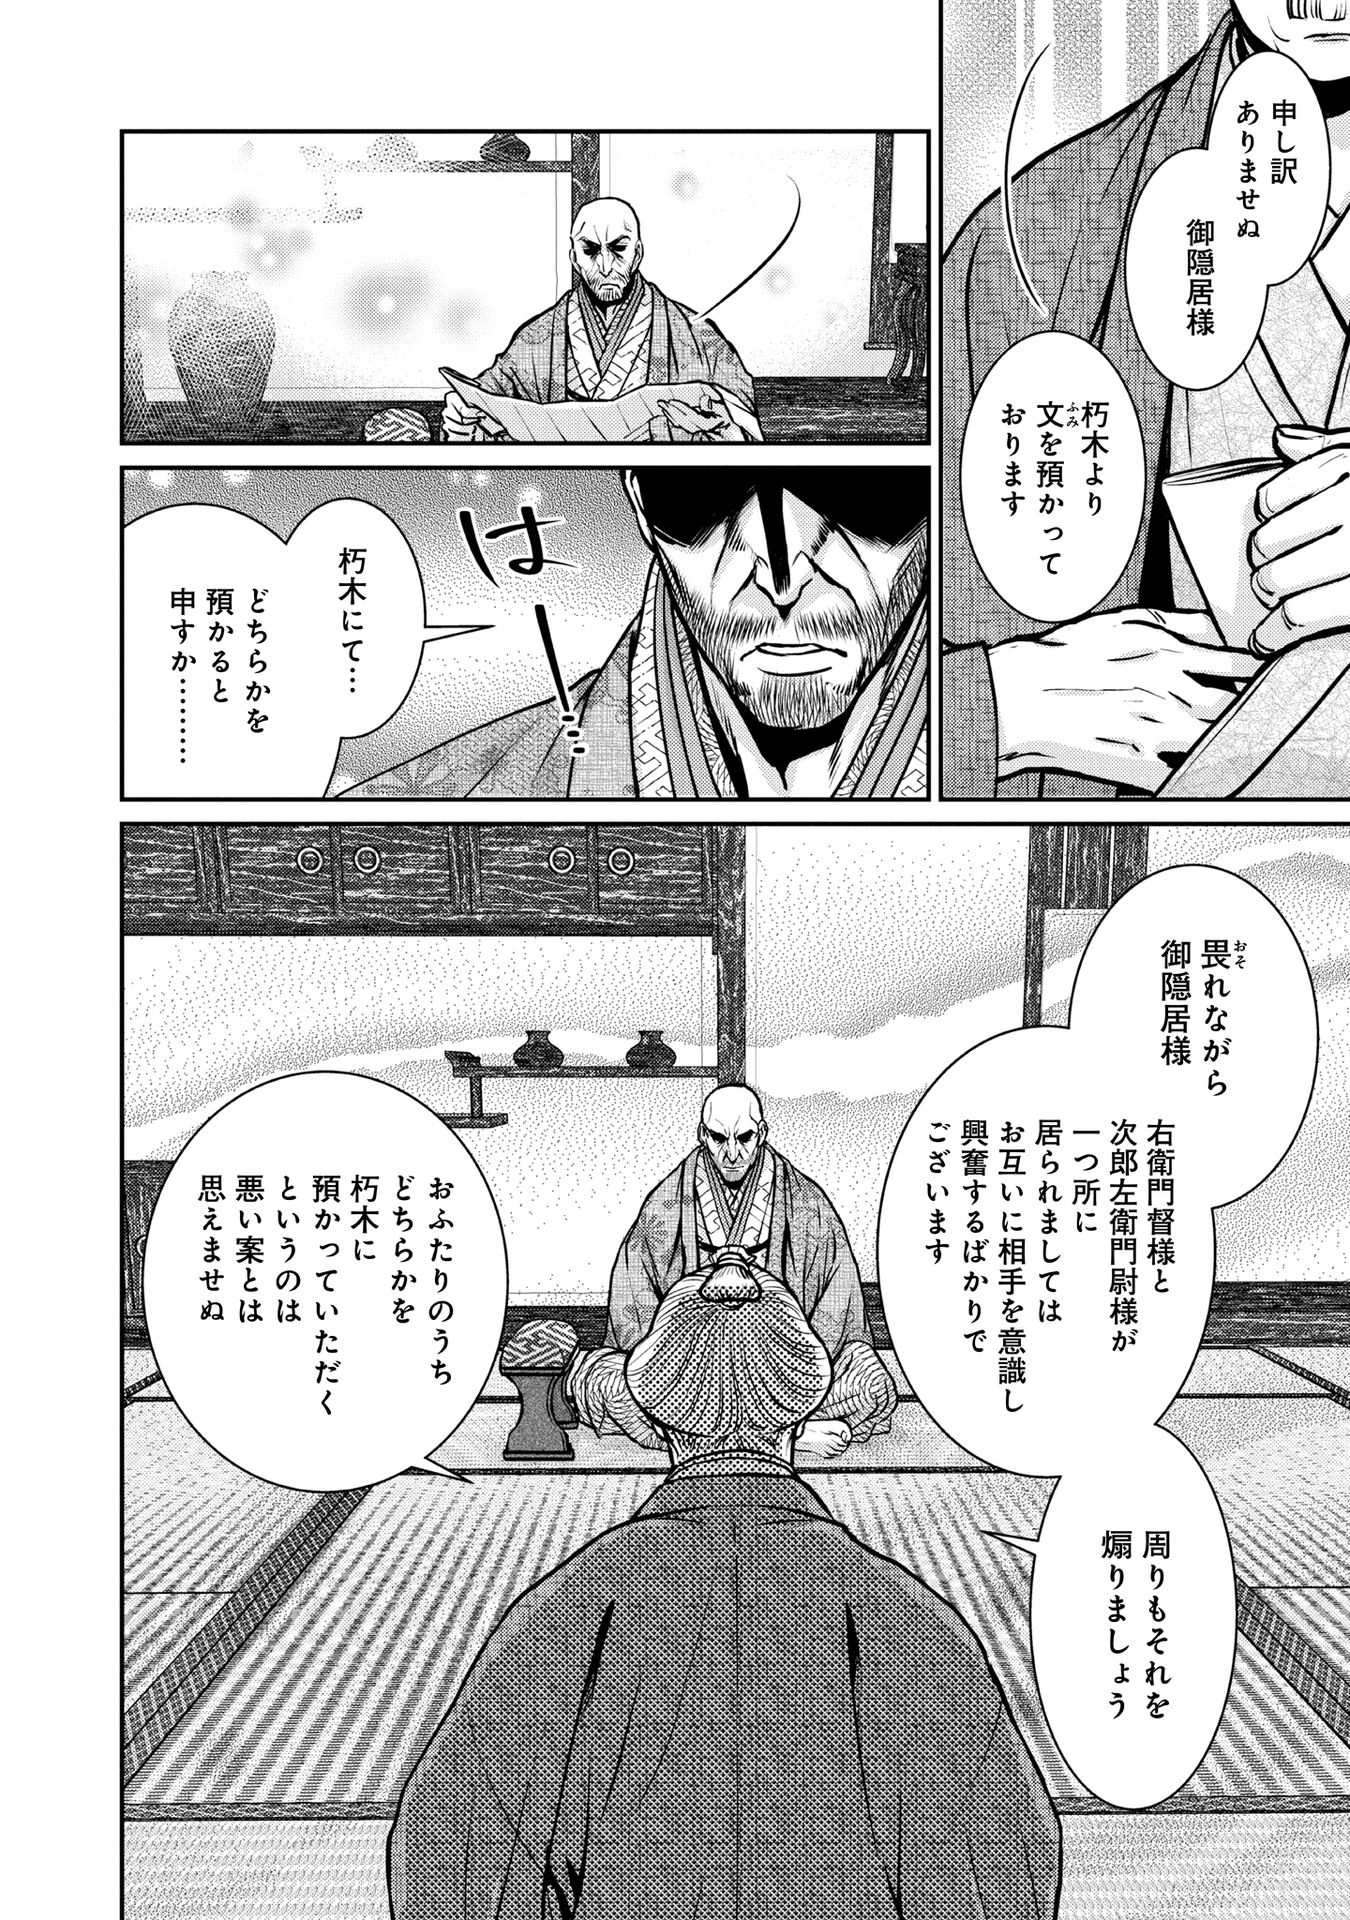 Afumi no Umi – Minamo ga Yureru Toki - Chapter 17 - Page 24